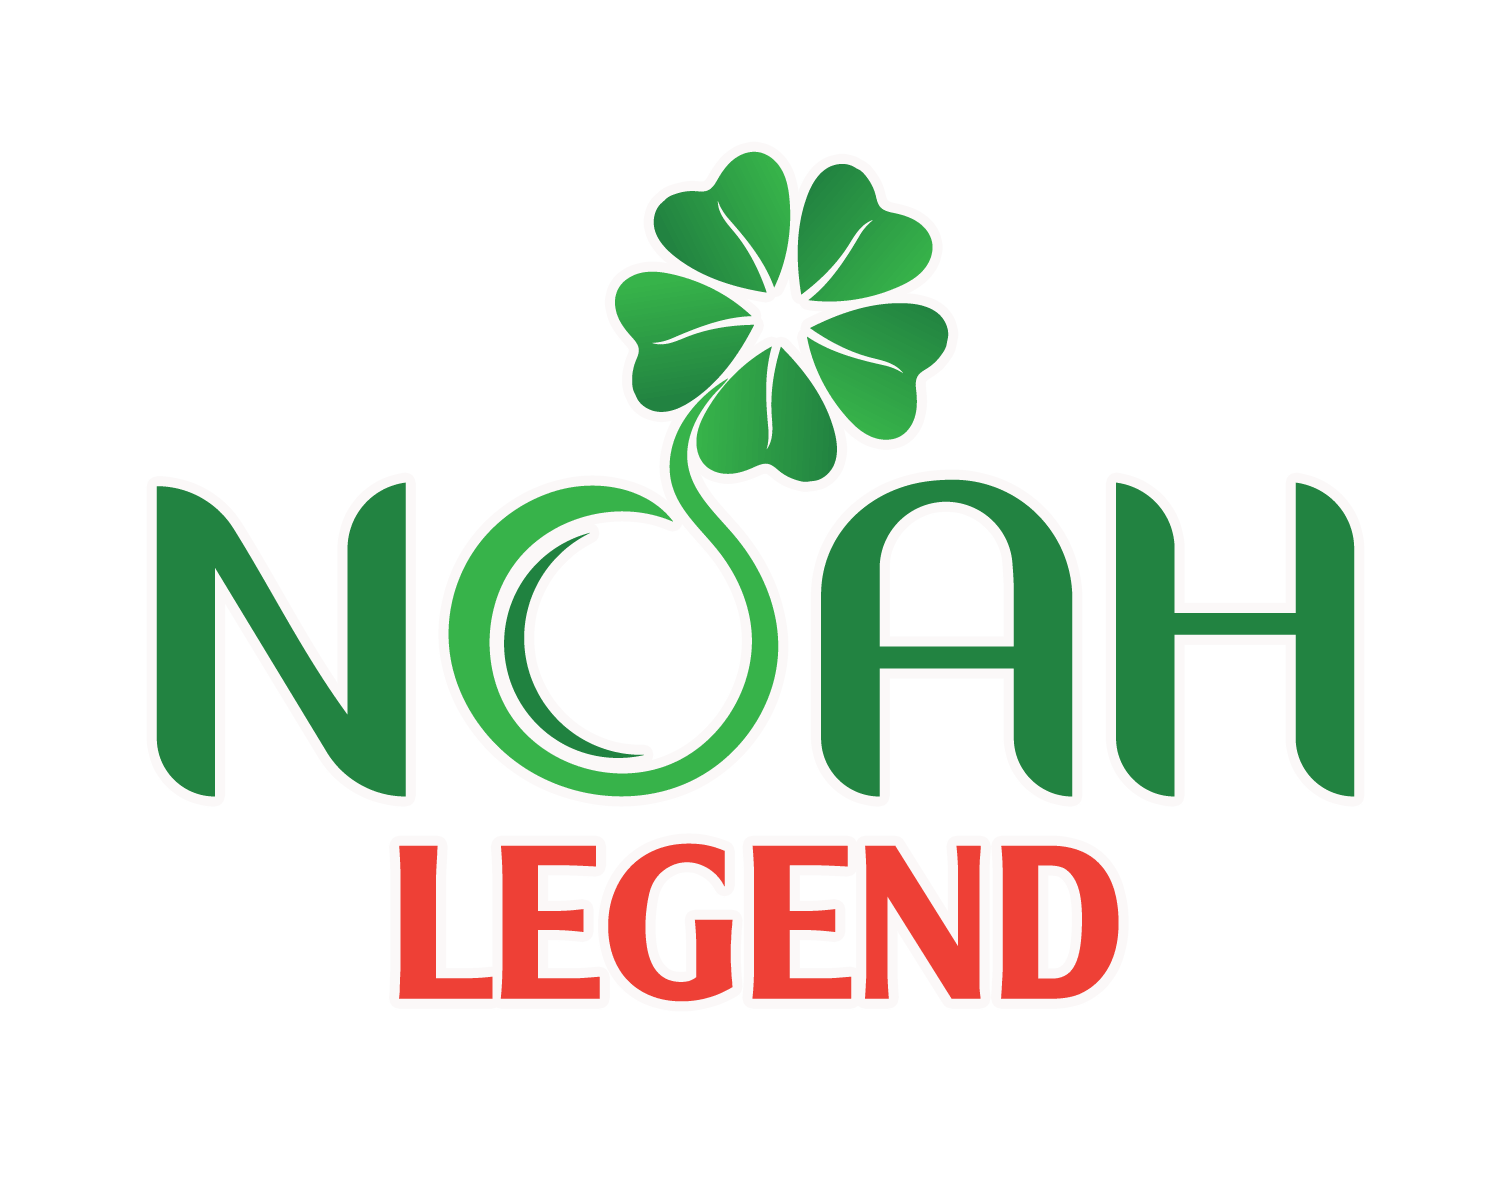 NOAH LEGEND